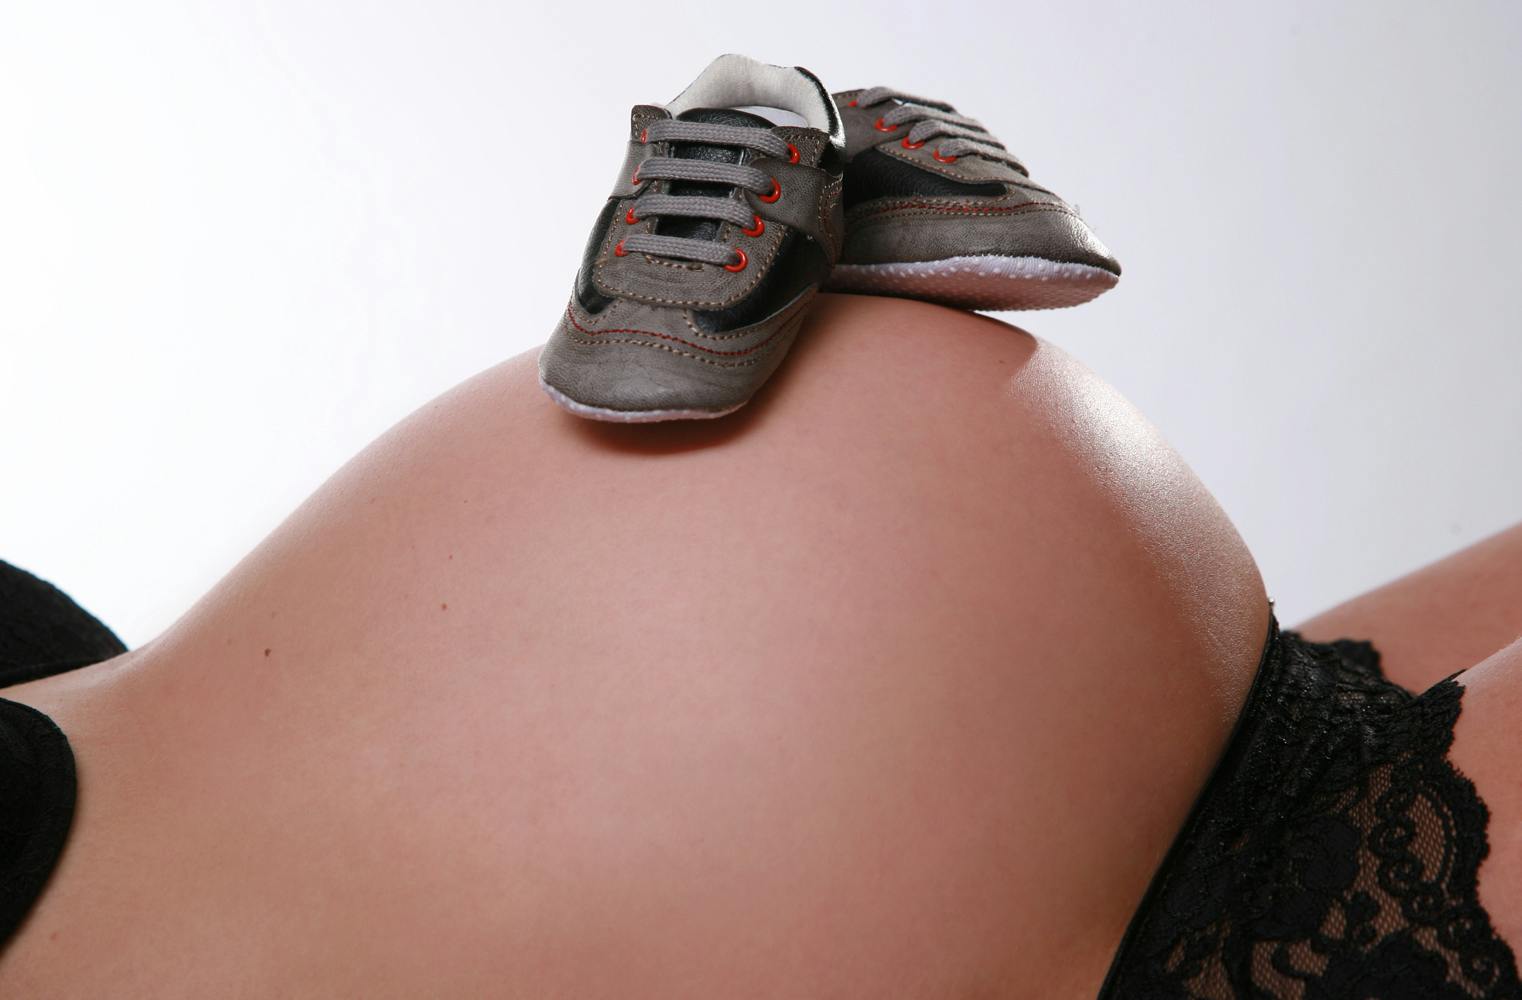 Babybauch Fotoshooting | mit 3 bearbeiteten Abzügen